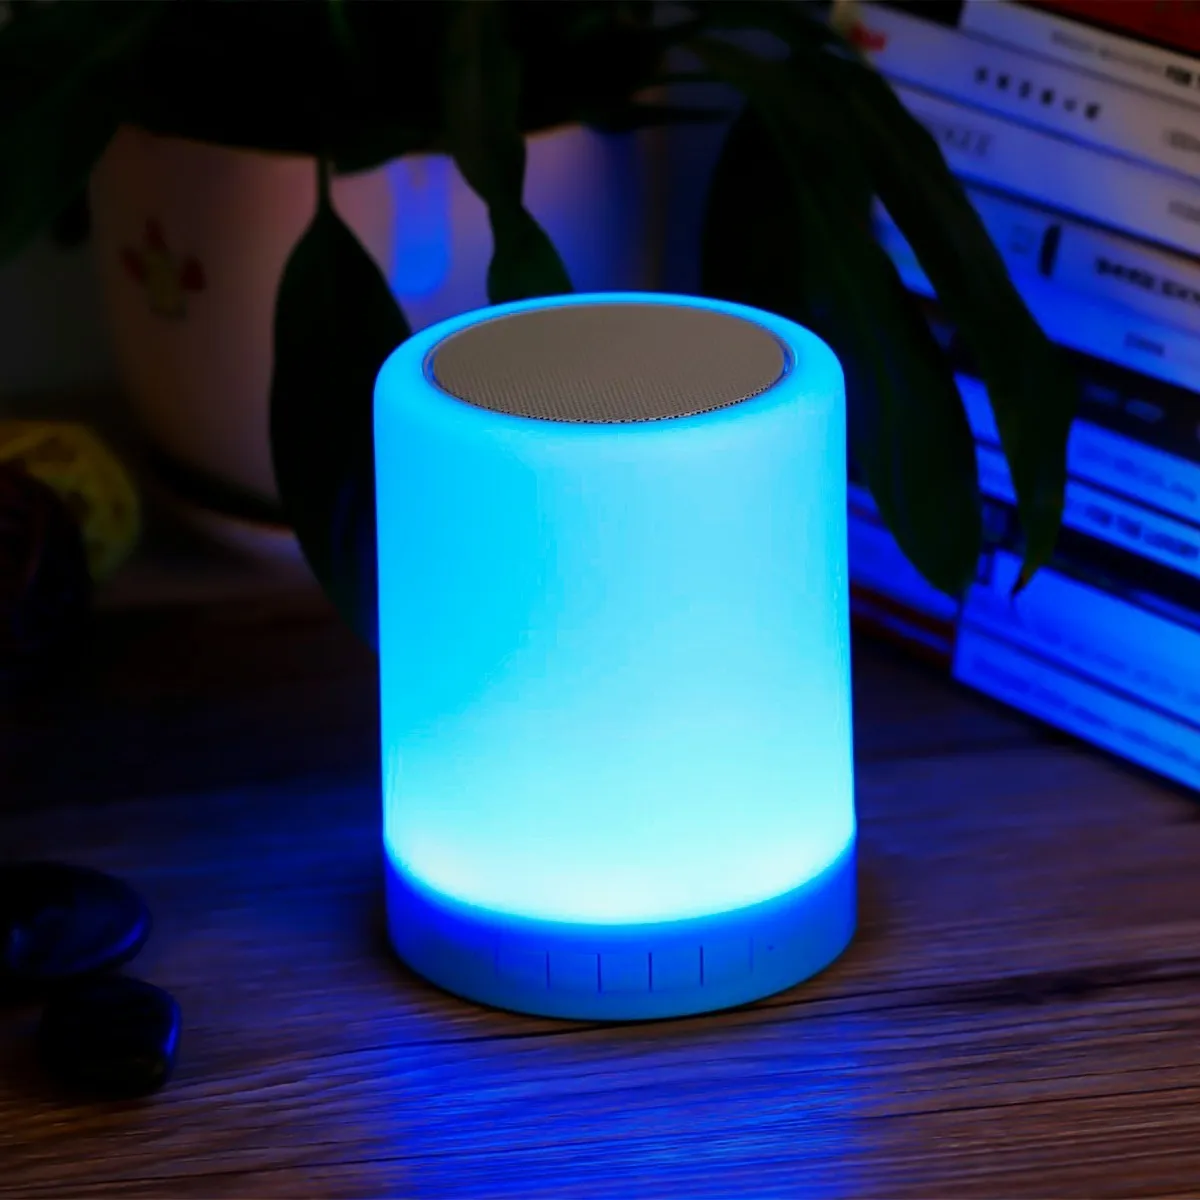 Essa luminária neon touch tem seu ajuste de cores por meio do toque